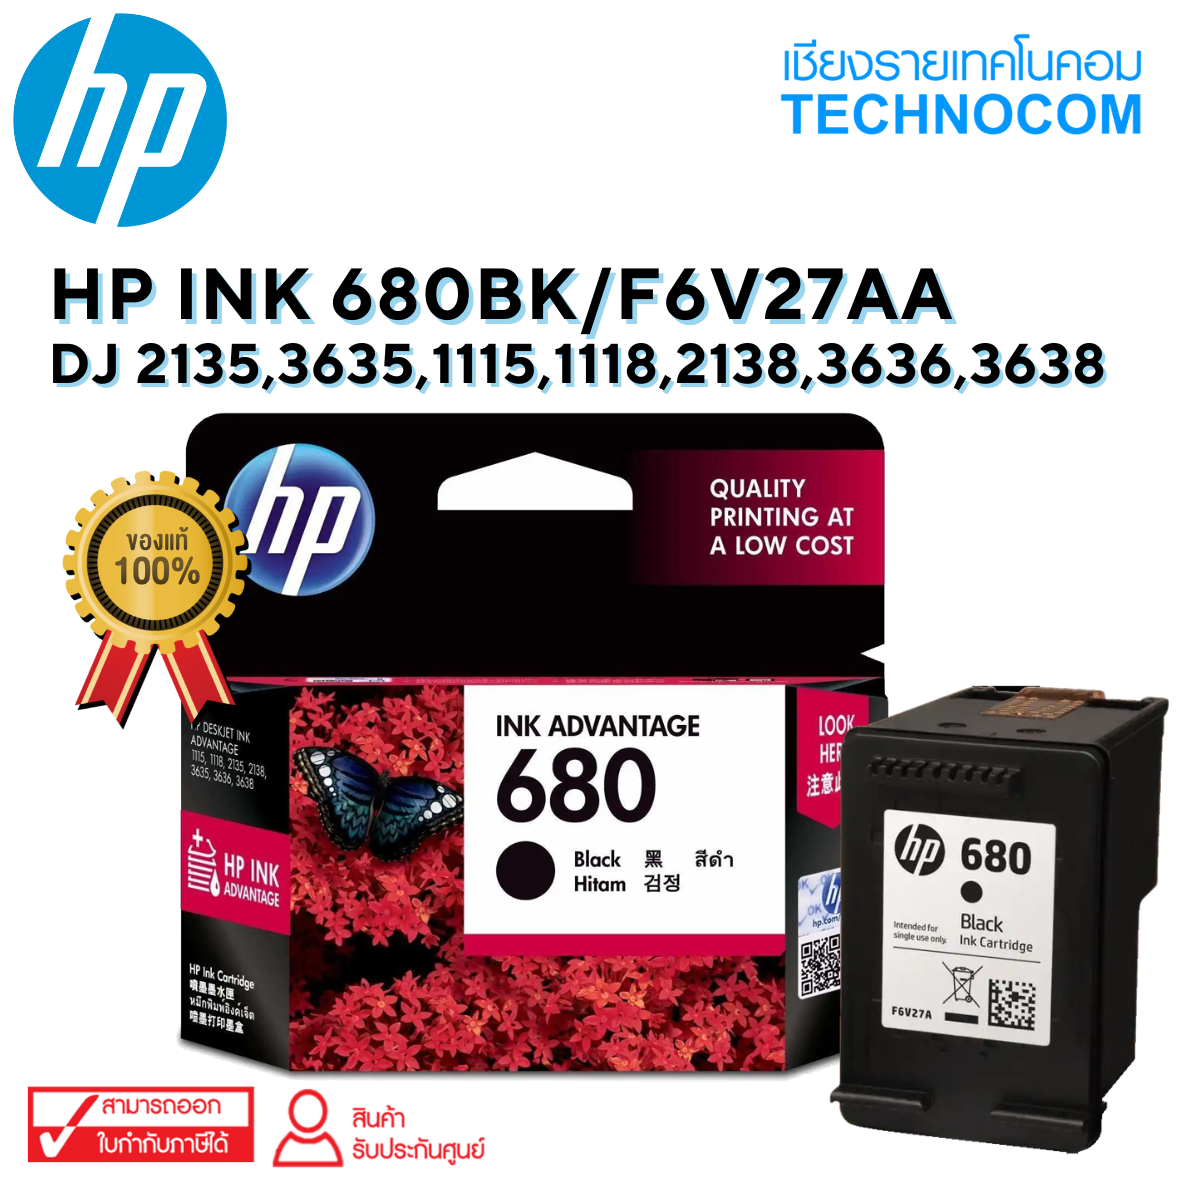 HP INK 680BK /F6V27AA/ DJ 2135,3635,1115,1118,2138,3636,3638